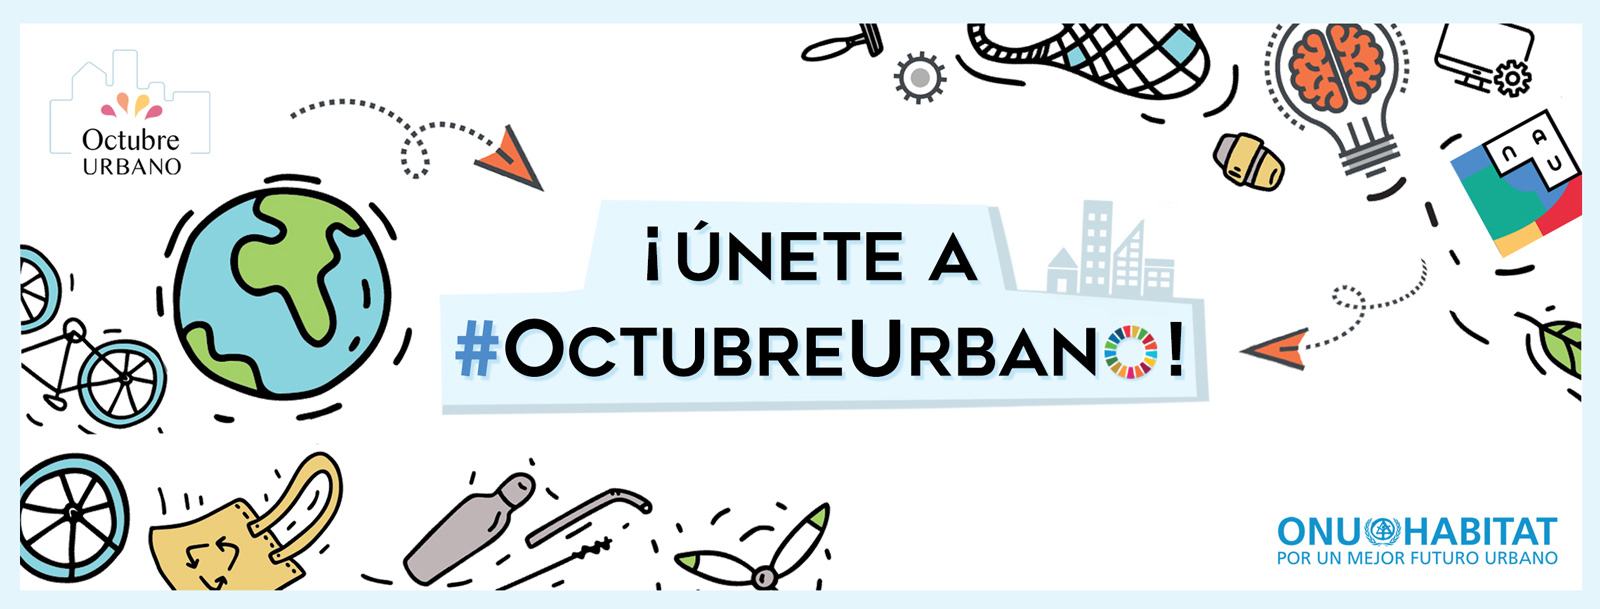 Octubre Urbano 2019